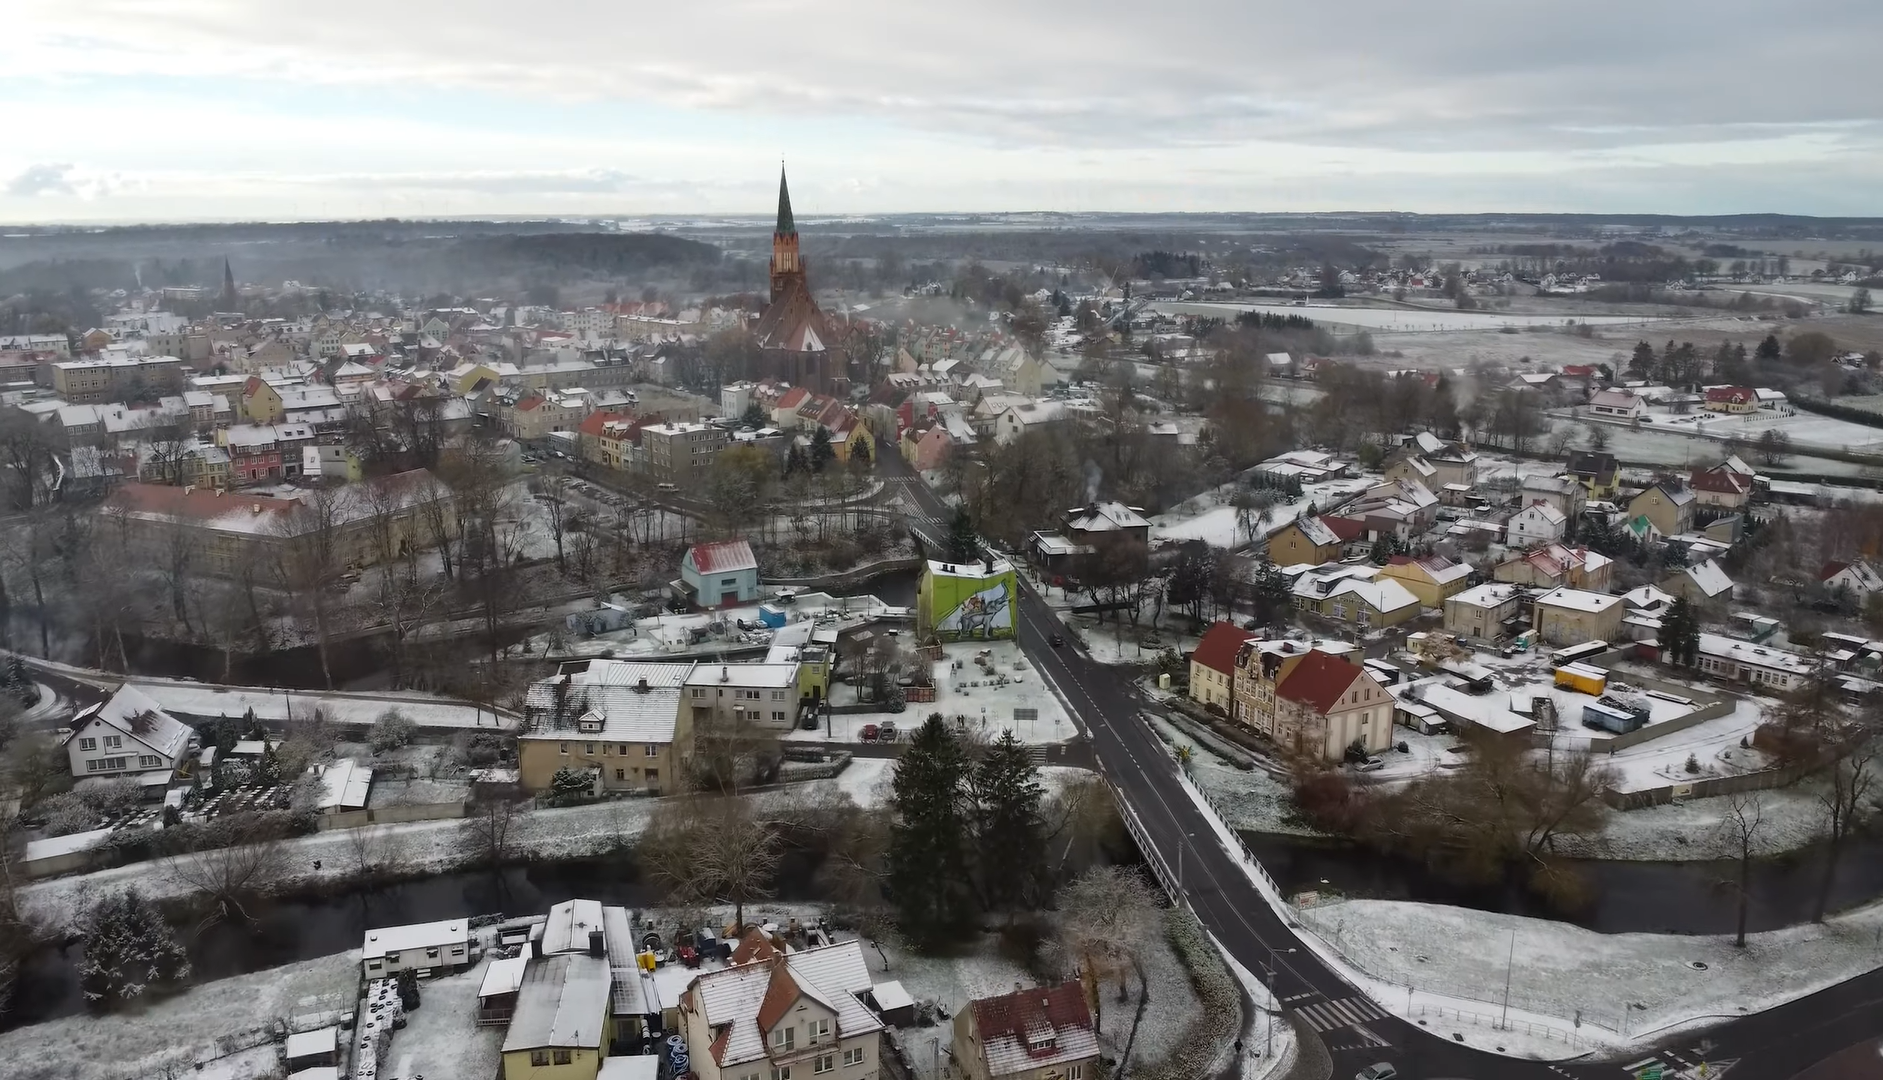 Widok z lotu ptaka na zimowe miasteczko Trzebiatów z kościołem o wysokim, strzelistym dachu, domami z kolorowymi fasadami i drogami pokrytymi częściowo śniegiem.